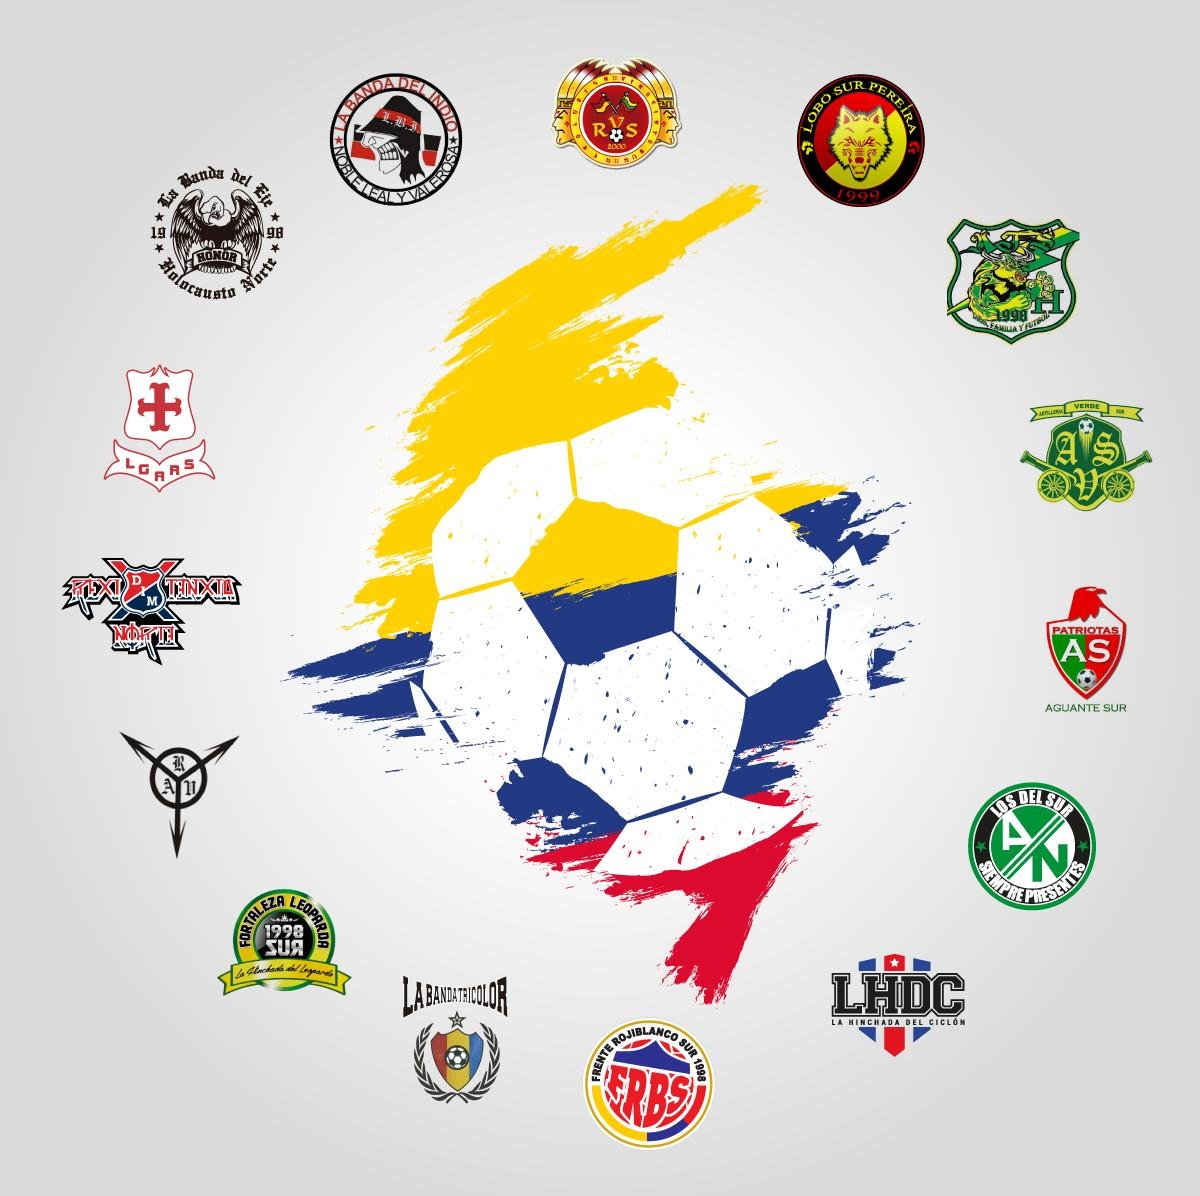 Barras colombianas unidas por la convivencia y que pensamos que el fútbol en paz es posible en nuestro país.